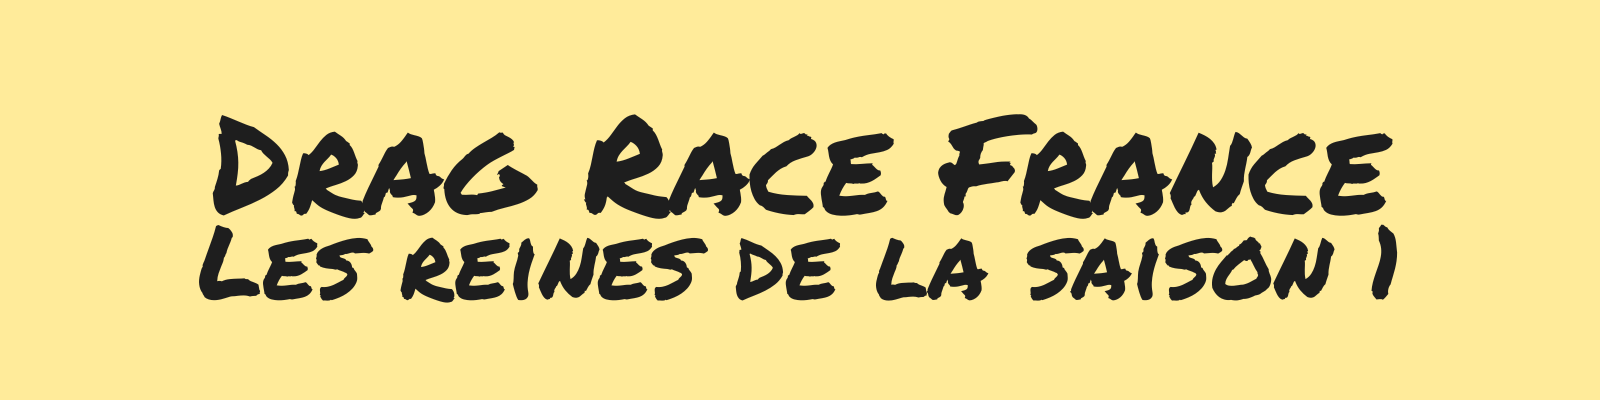 Drag Race France - Les reines de la saison 1